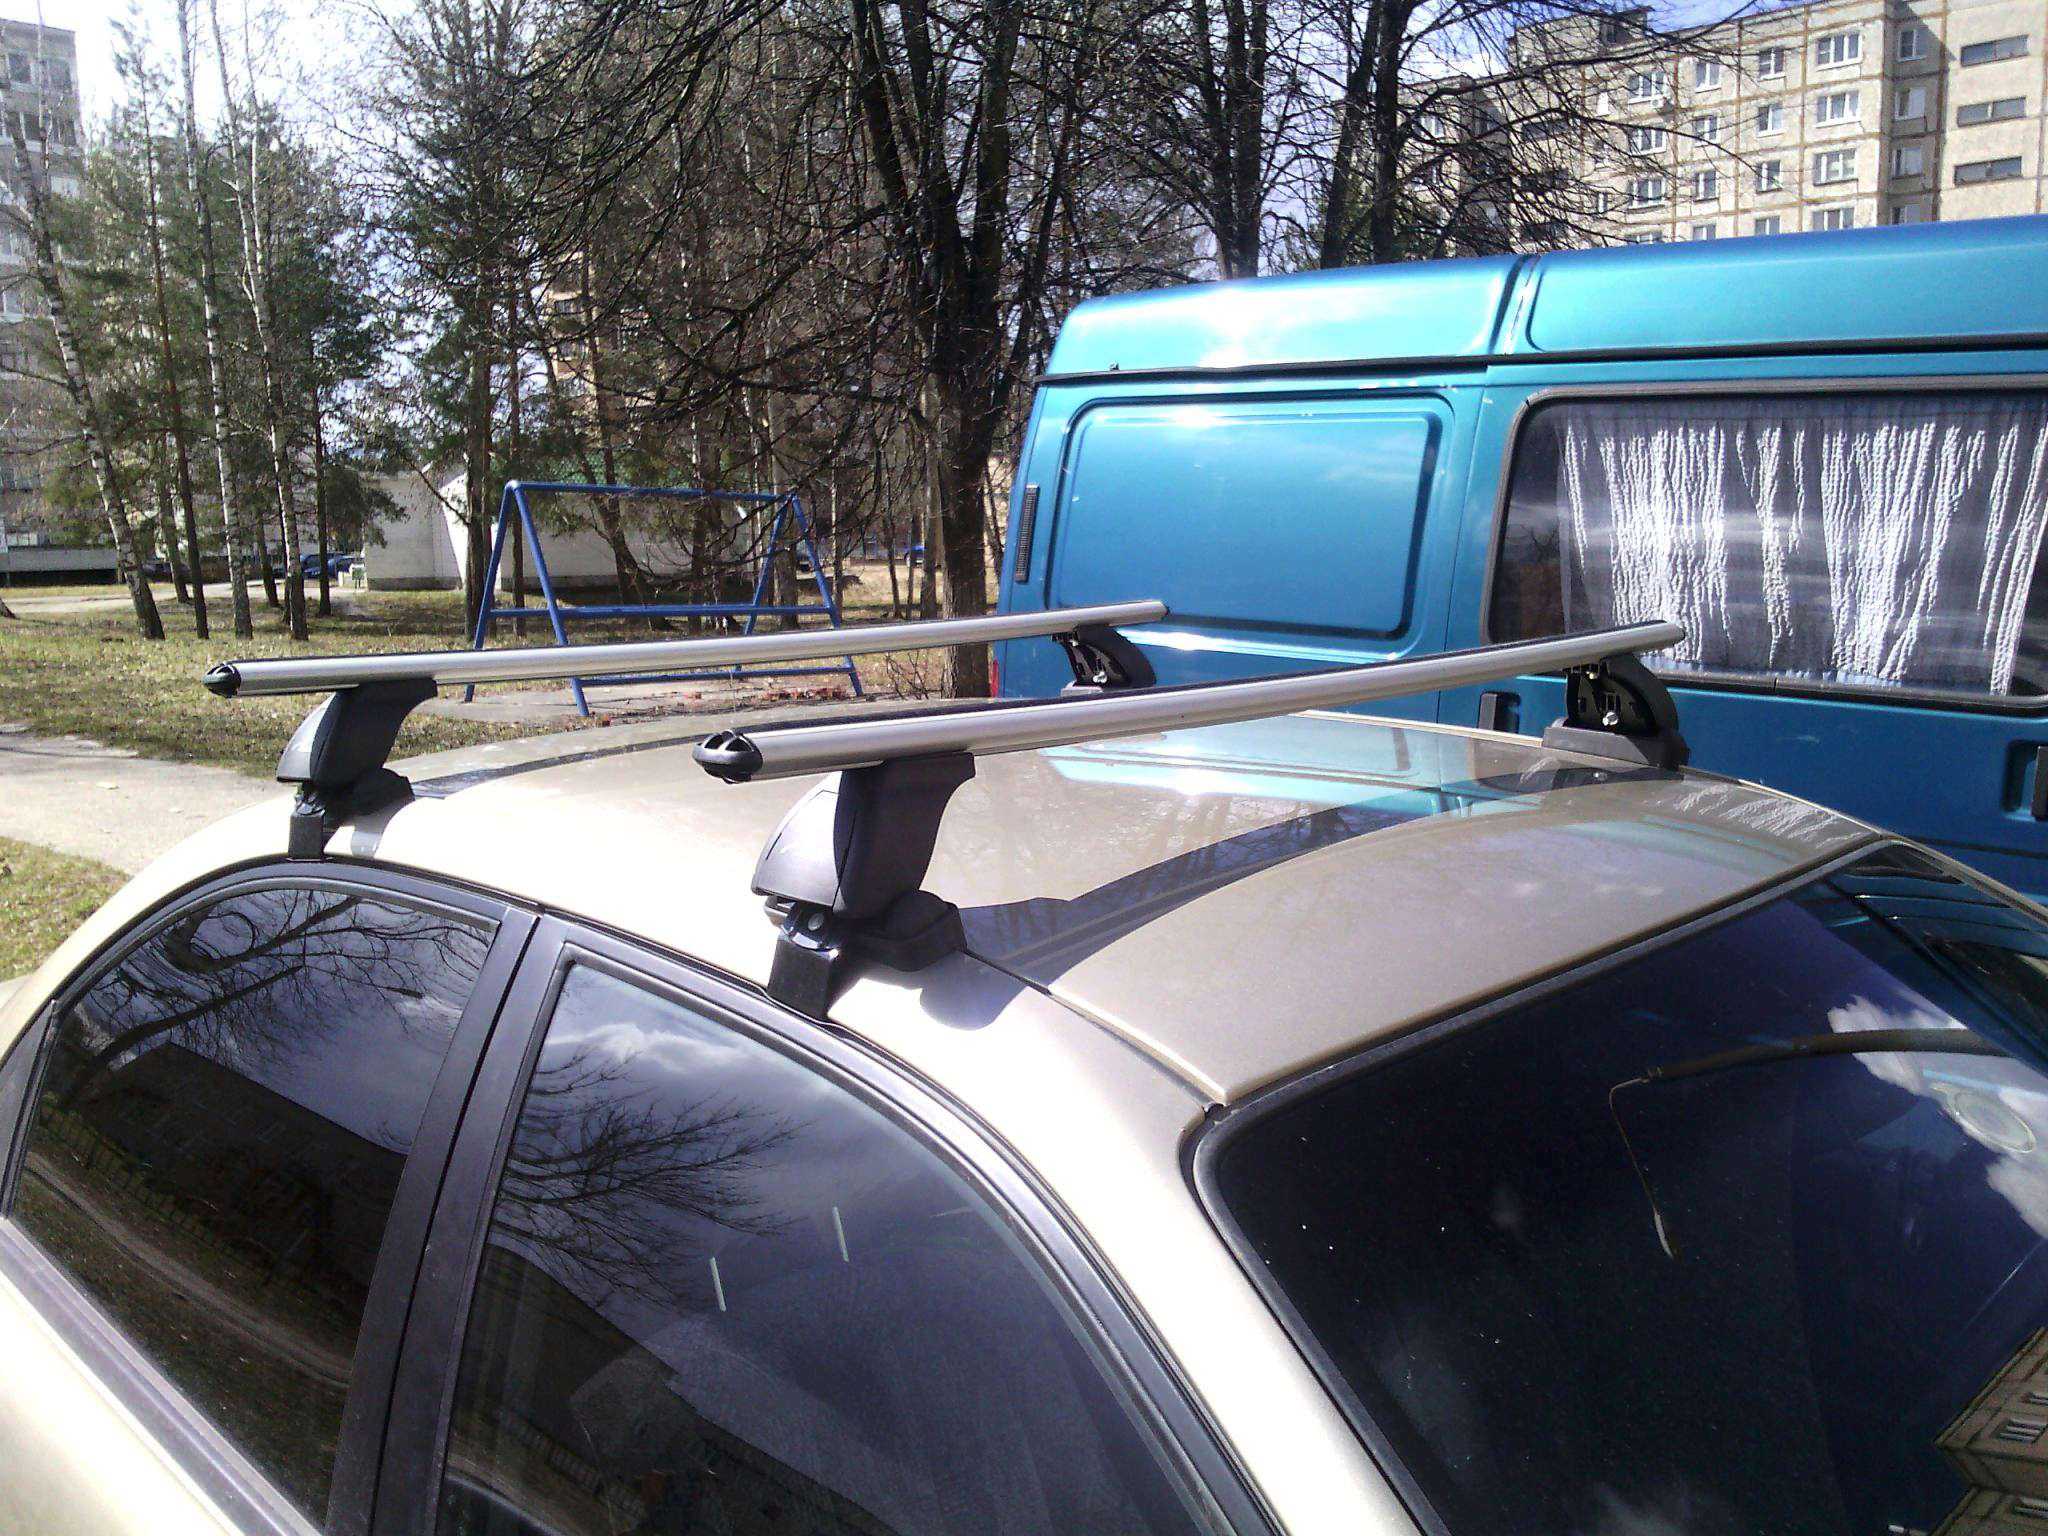 Подключение розетки прицепа и фаркопа легкового и грузового автомобиля, схема по цветам, распиновка - autotopik.ru